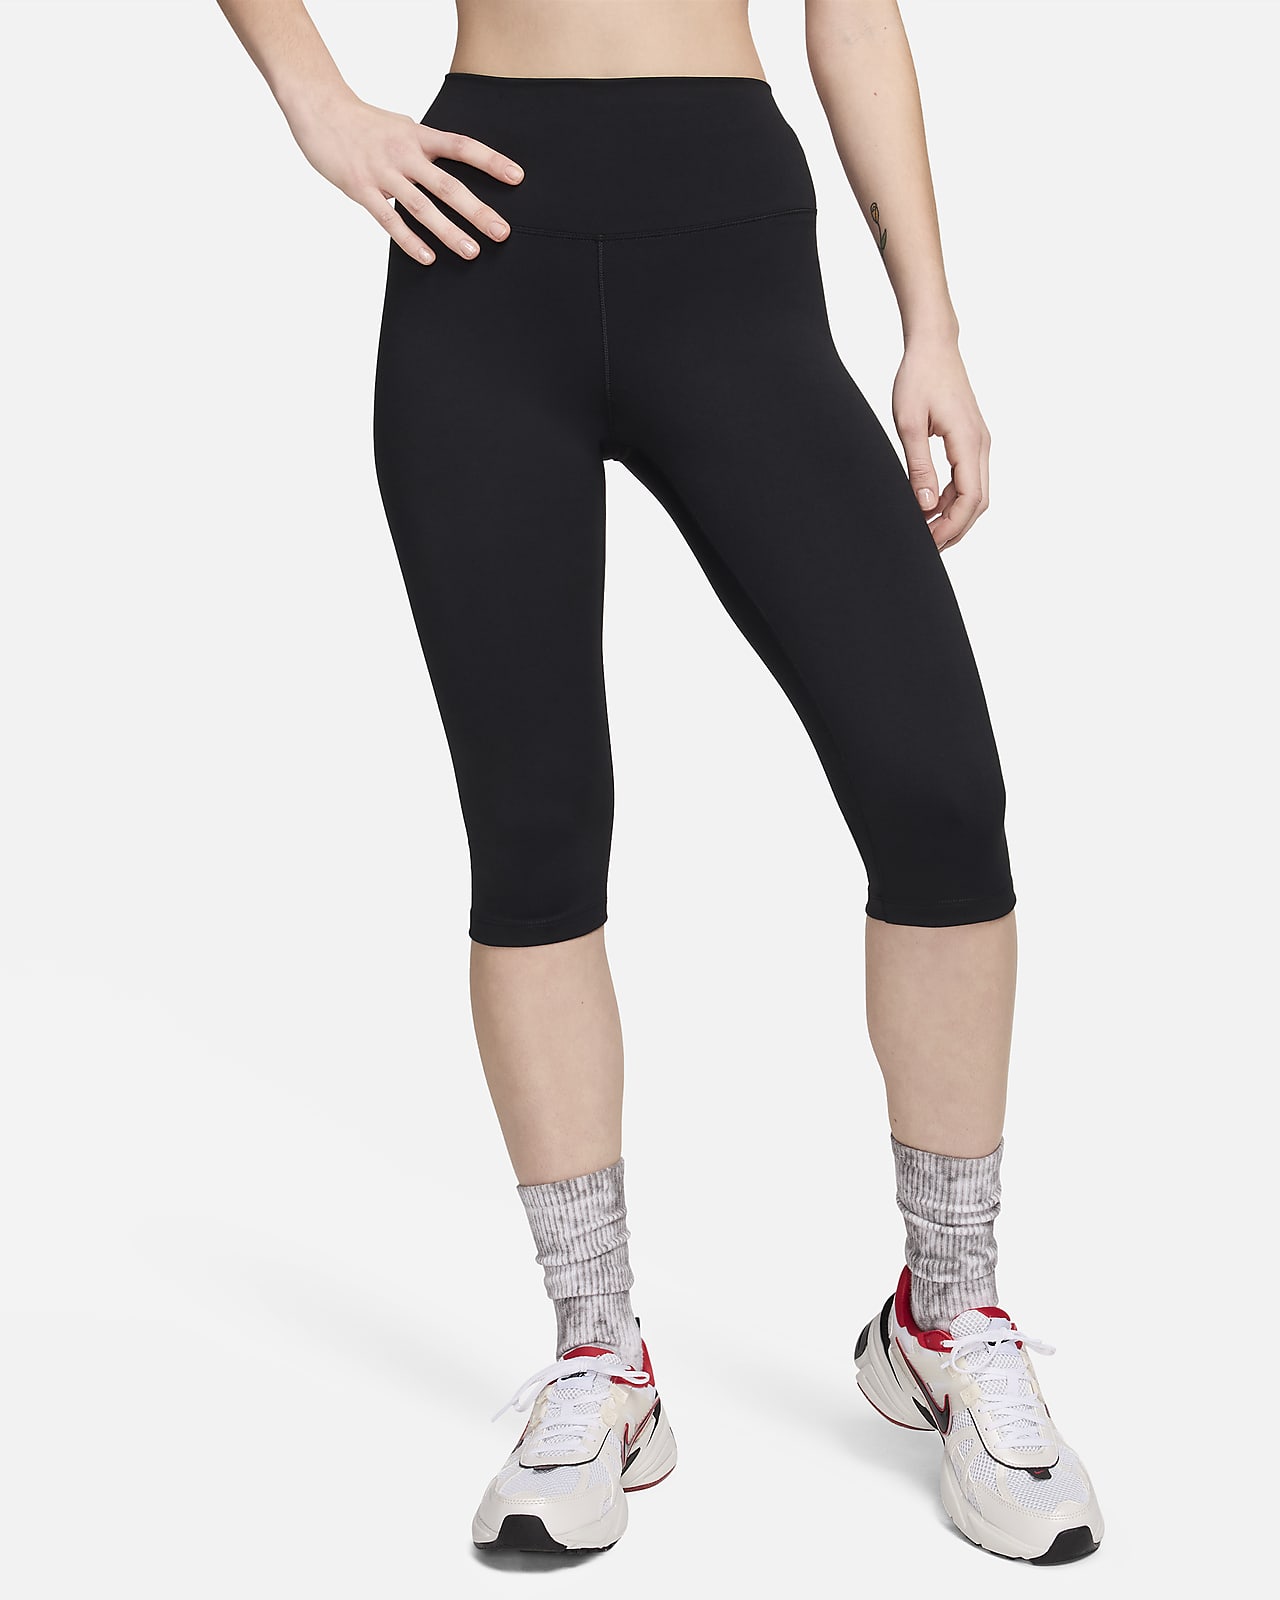 Nike One Leggings pirata de talle alto - Mujer